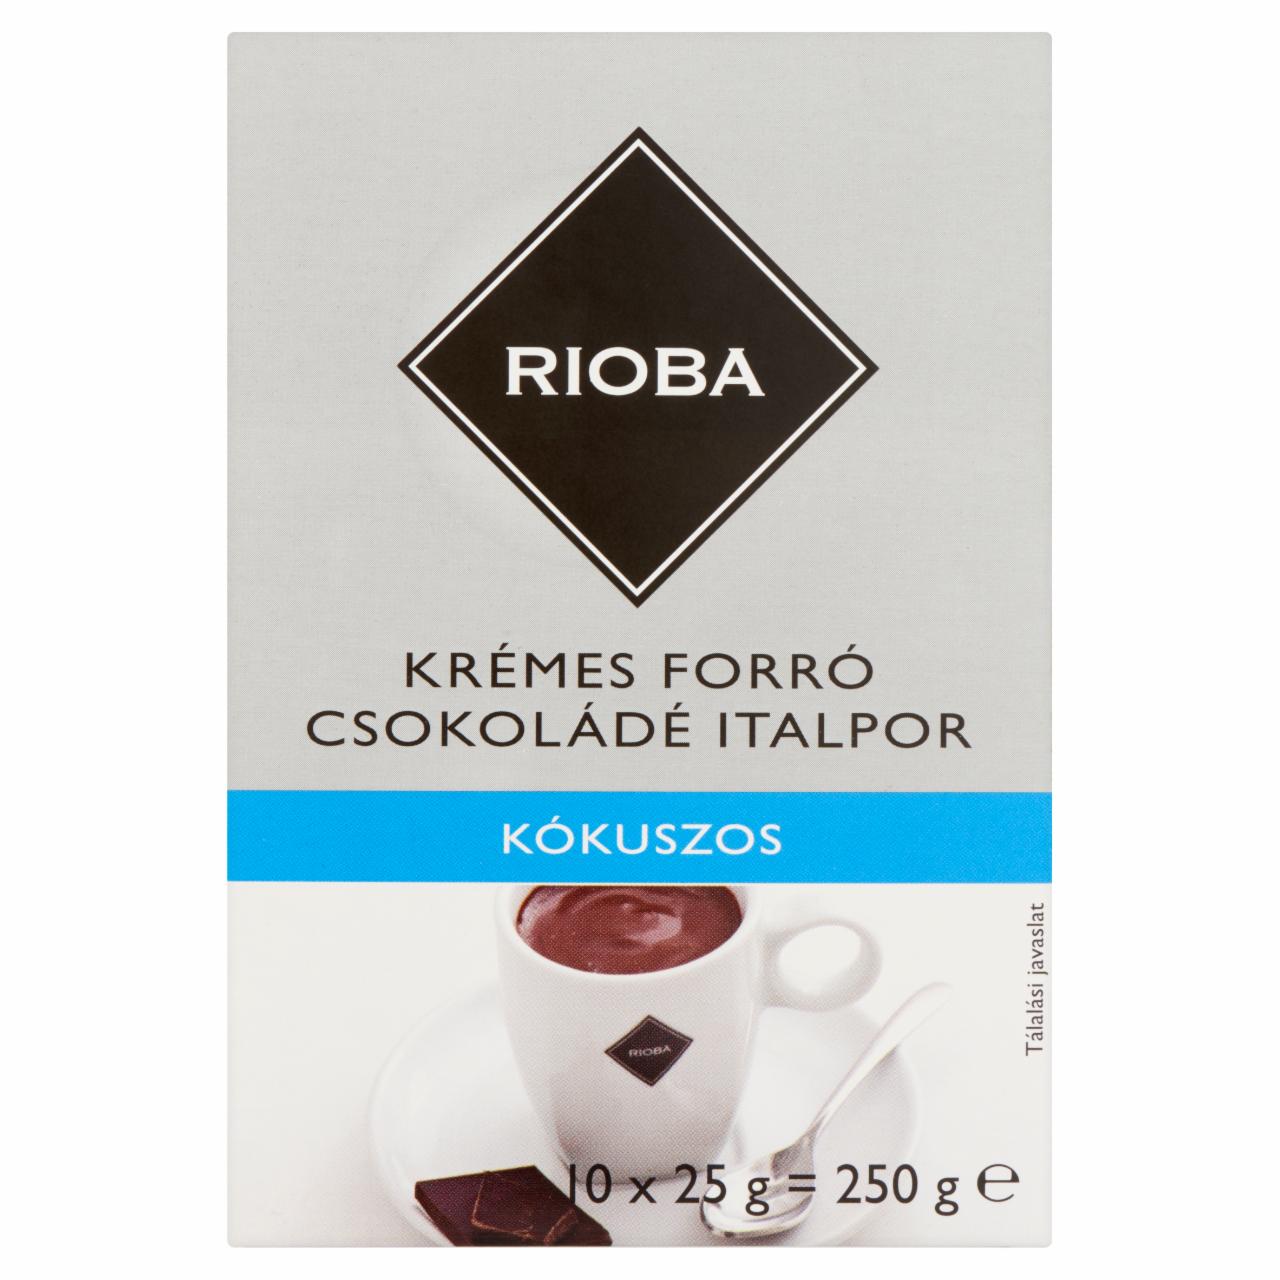 Képek - Rioba kókuszos krémes forró csokoládé italpor 10 db 250 g